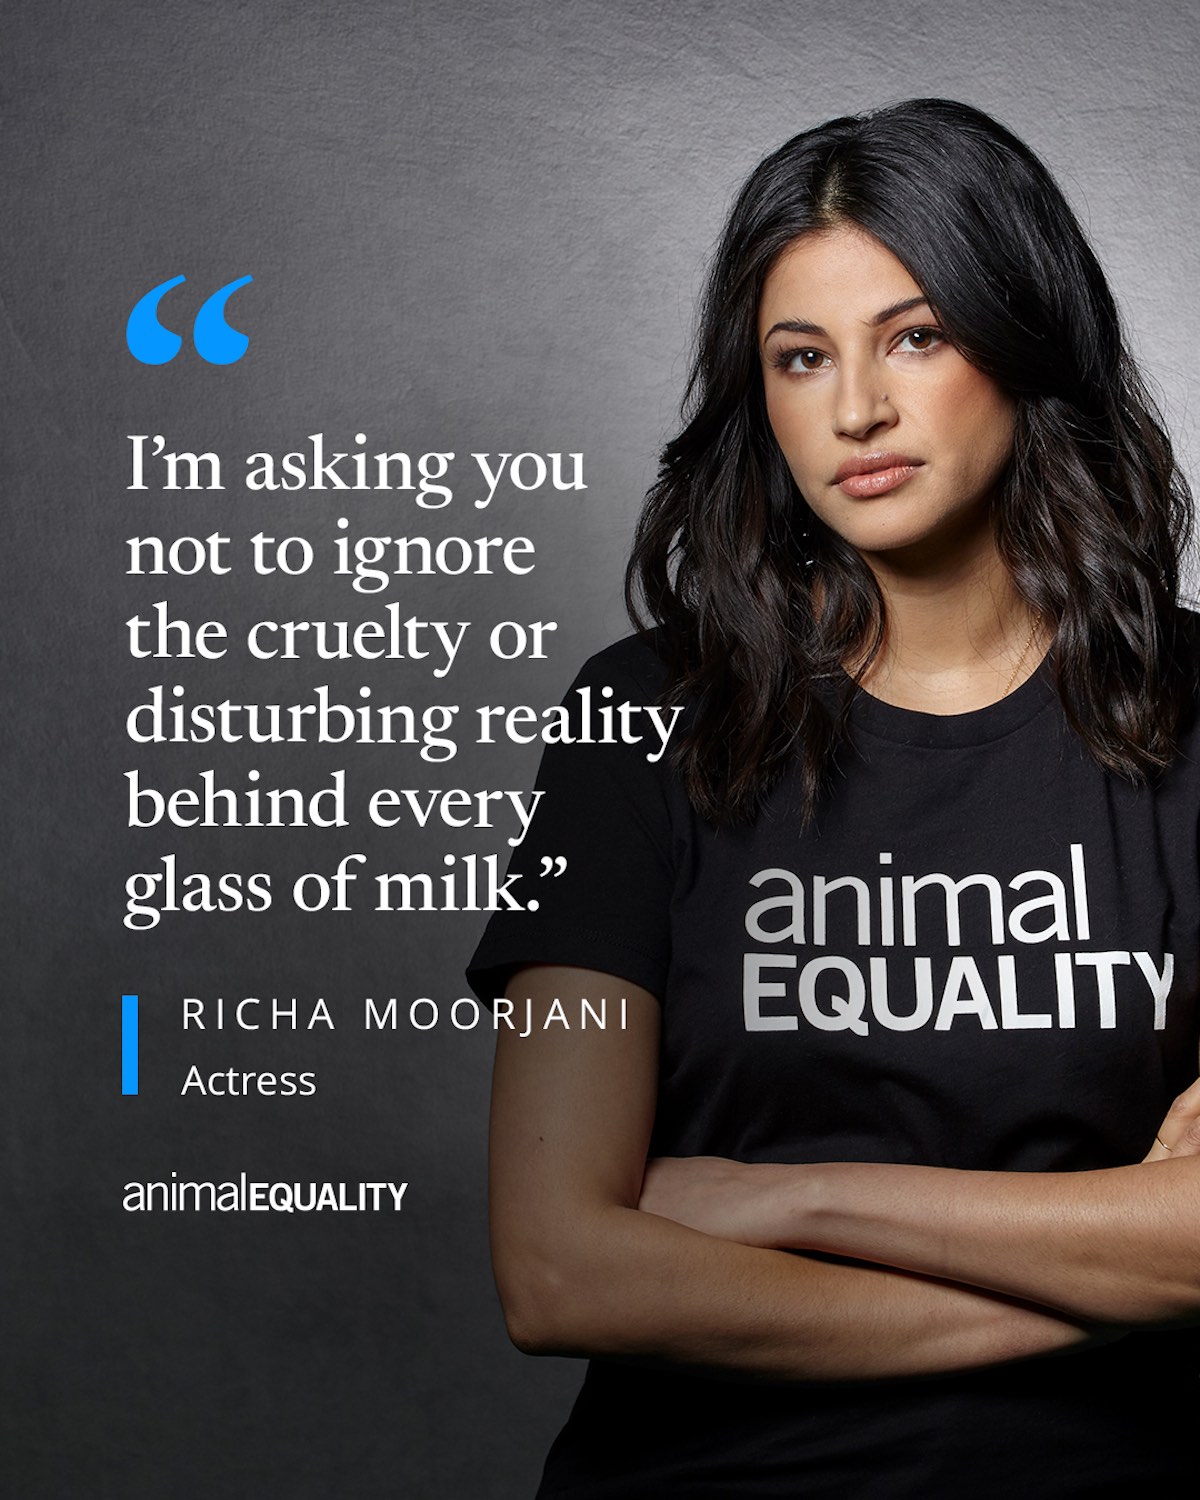 Richa Moorjani with Animal Equality shirt